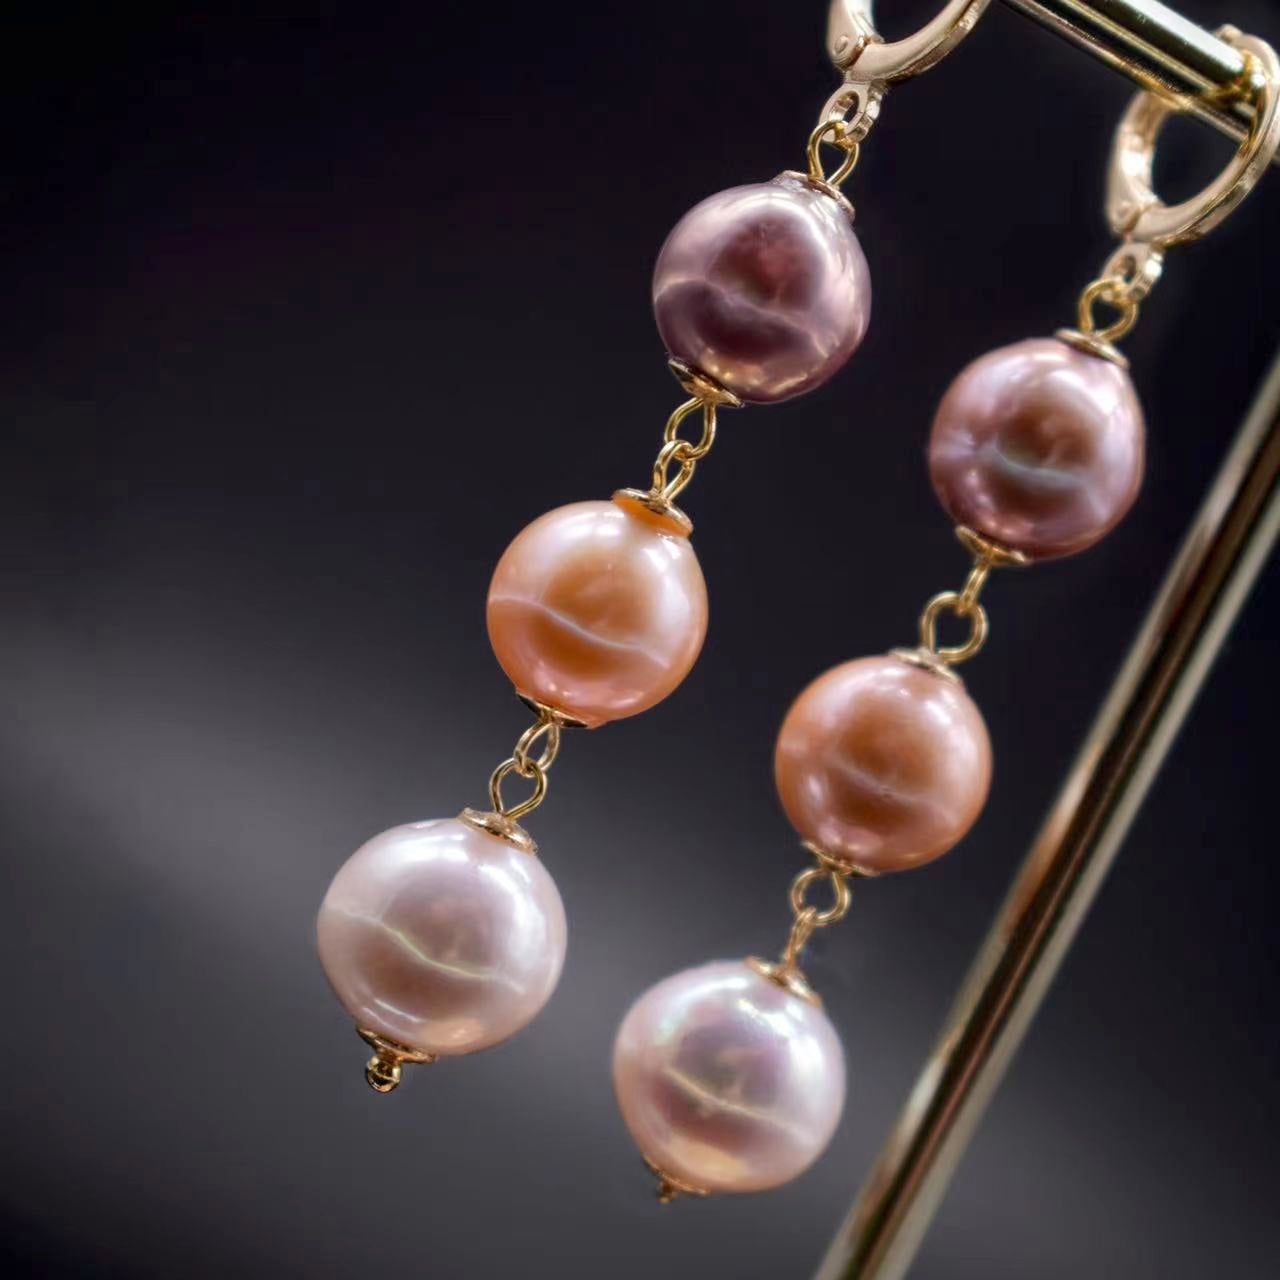 Freshwater Pearl Earrings - Leona - Akuna Pearls